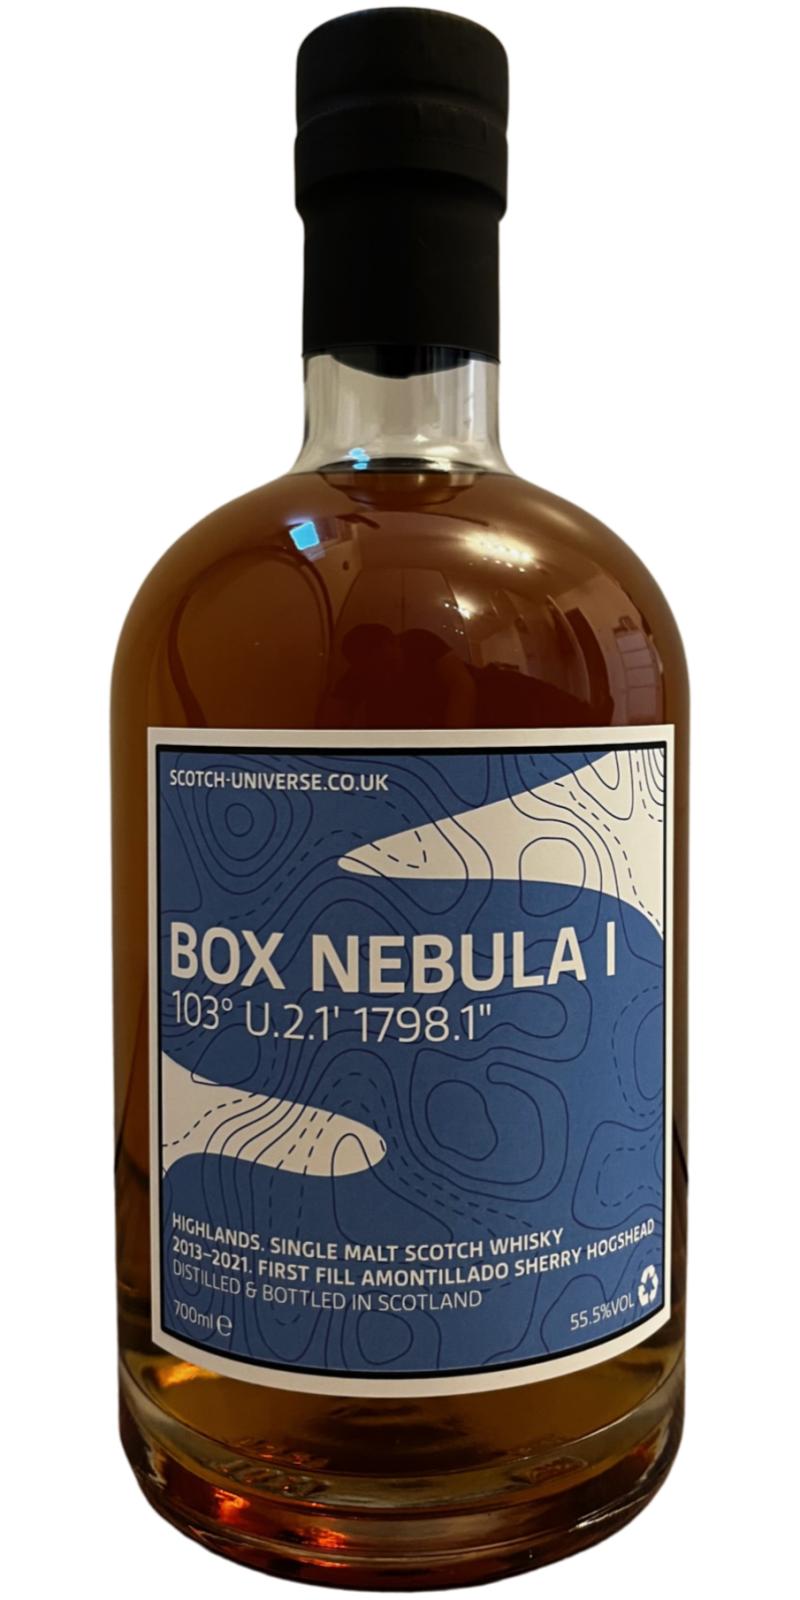 Scotch Universe Box Nebula I - 103° U.2.1' 1798.1''